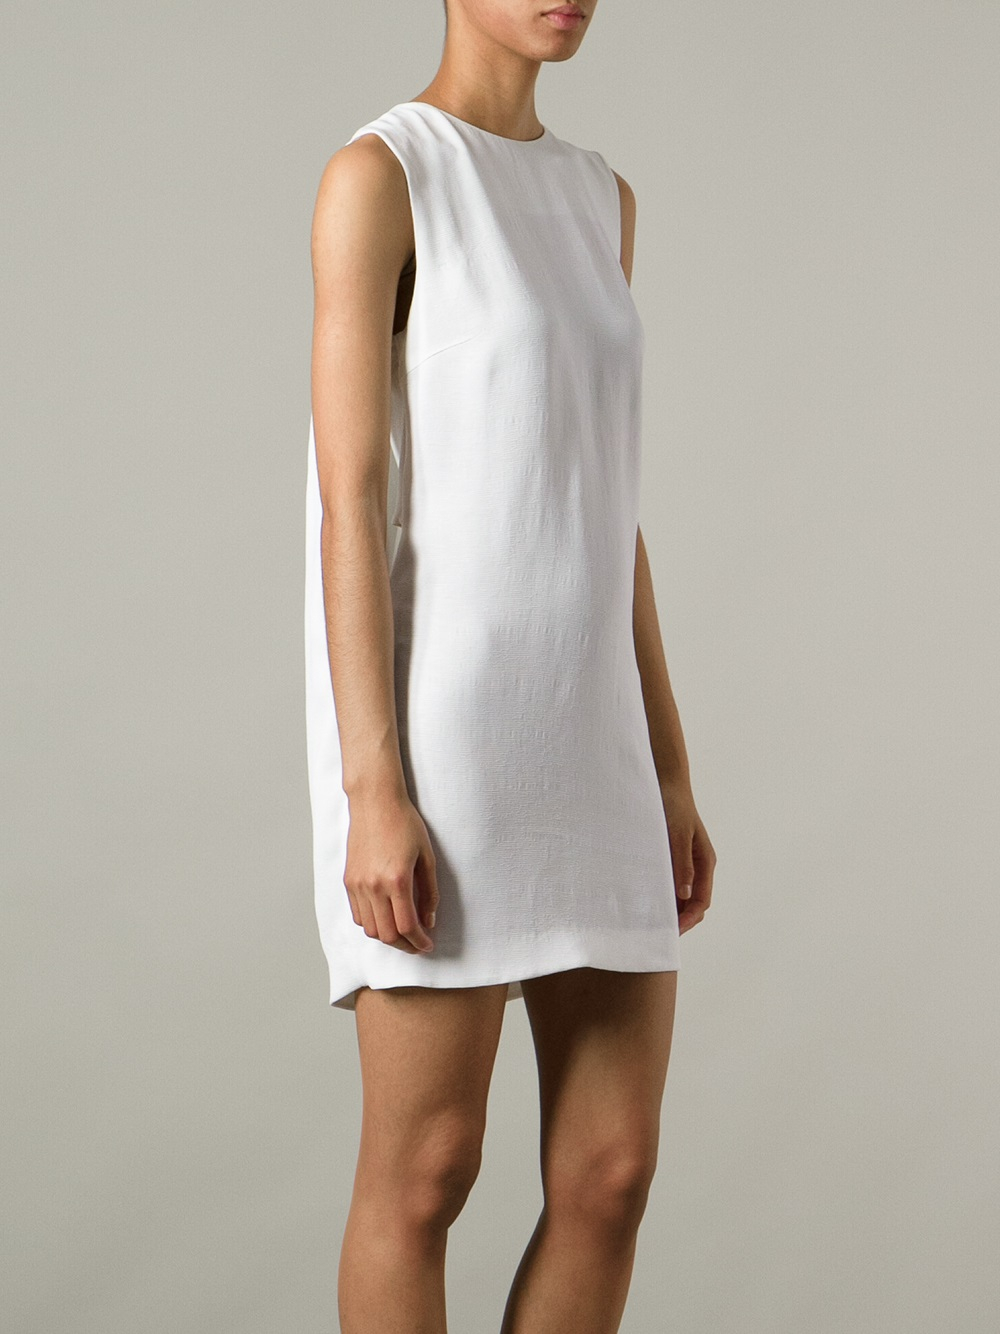 White Shift Dress Sleeveless Online ...